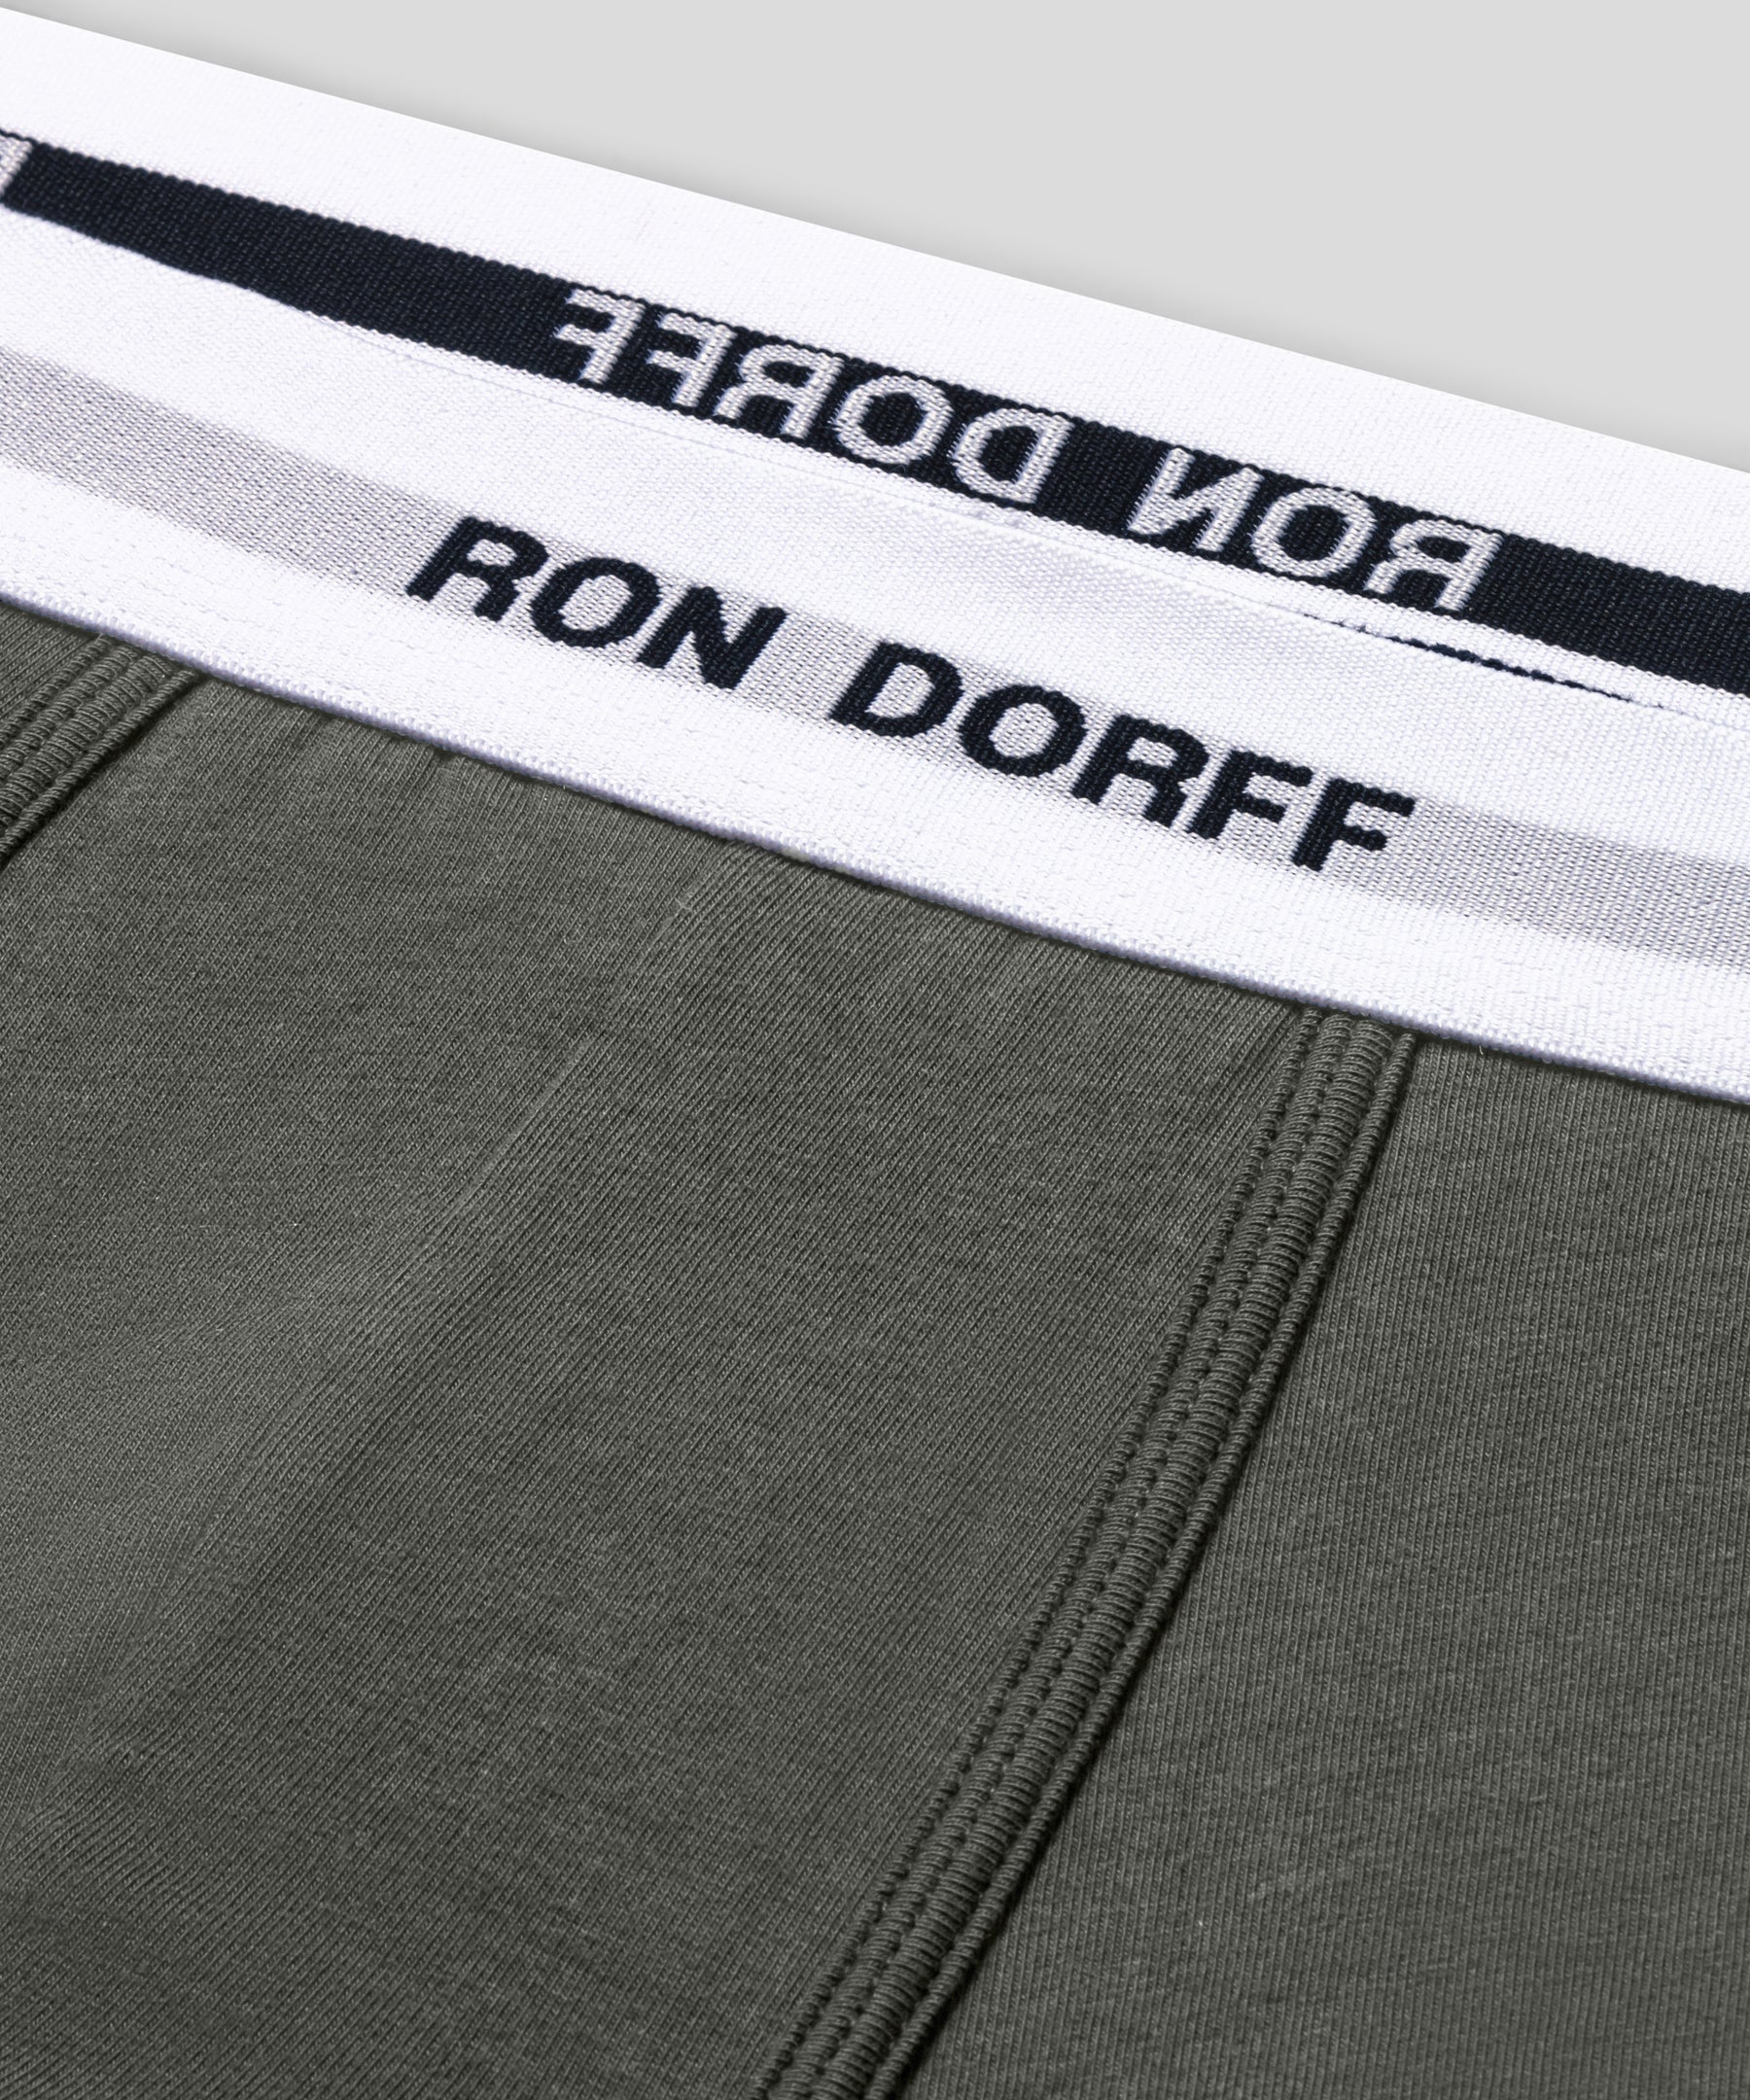 Boxer en coton à imprimés RON DORFF: Gris chiné/Vert militaire/Bleu foncé